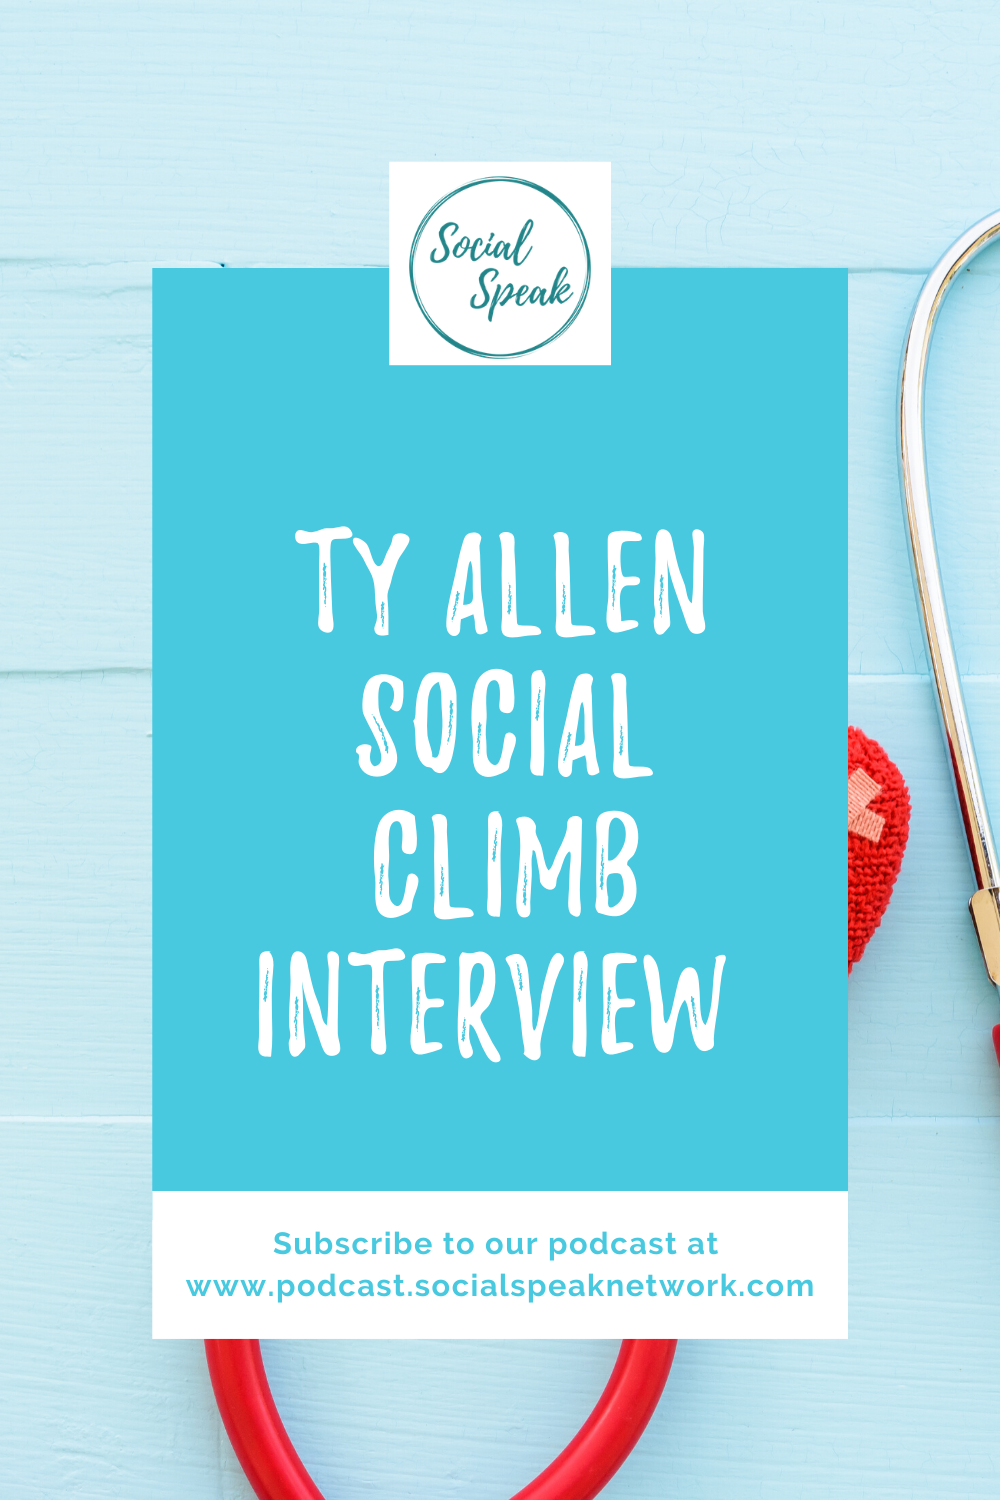 Ty Allen Social Climb Interview